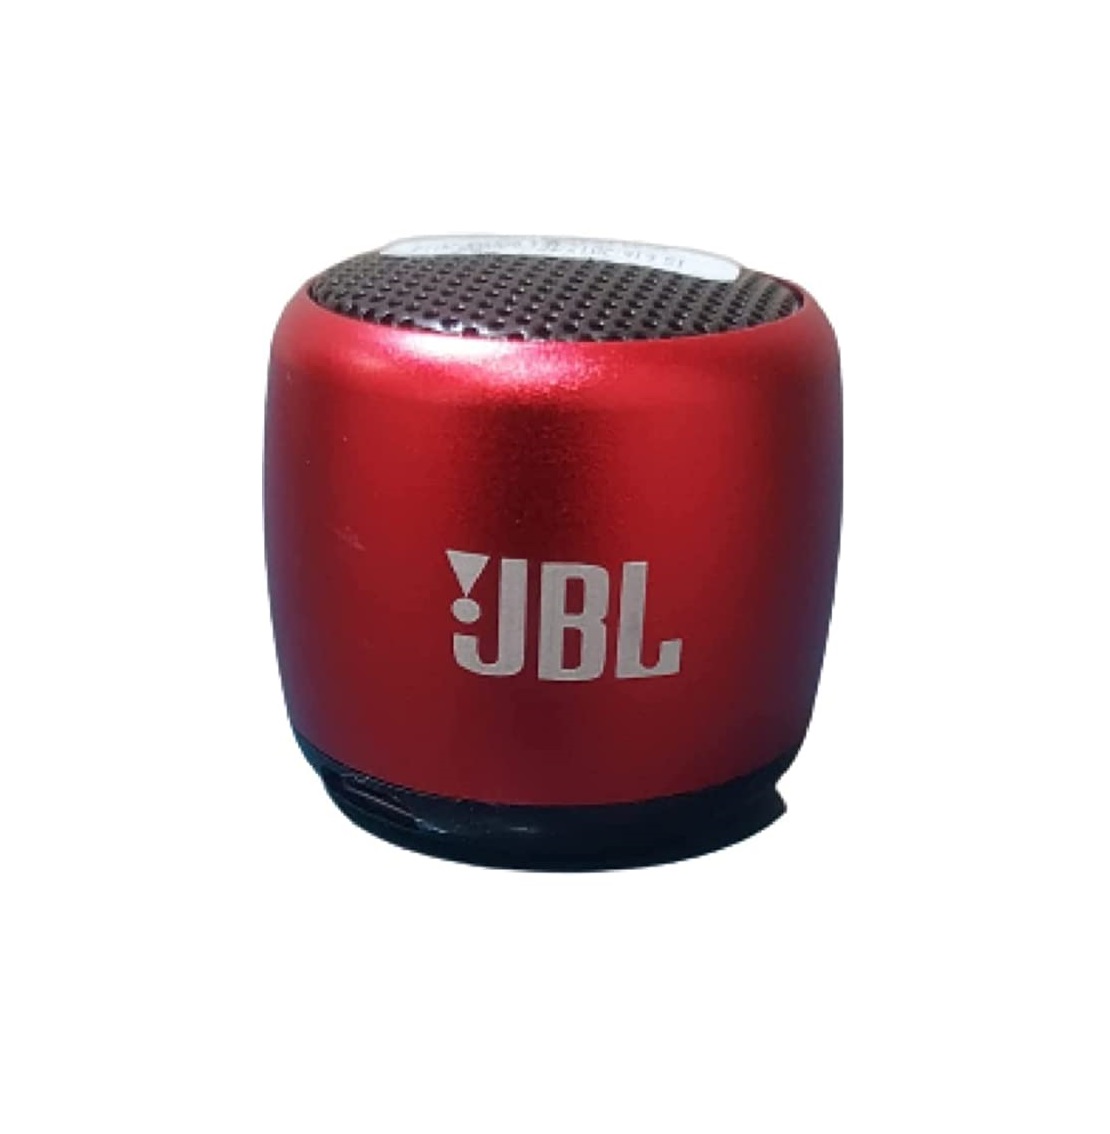 Ecart Mini JBL MINI BOOST Wireless Portable Bluetooth Speaker (Red) - AddMeCart